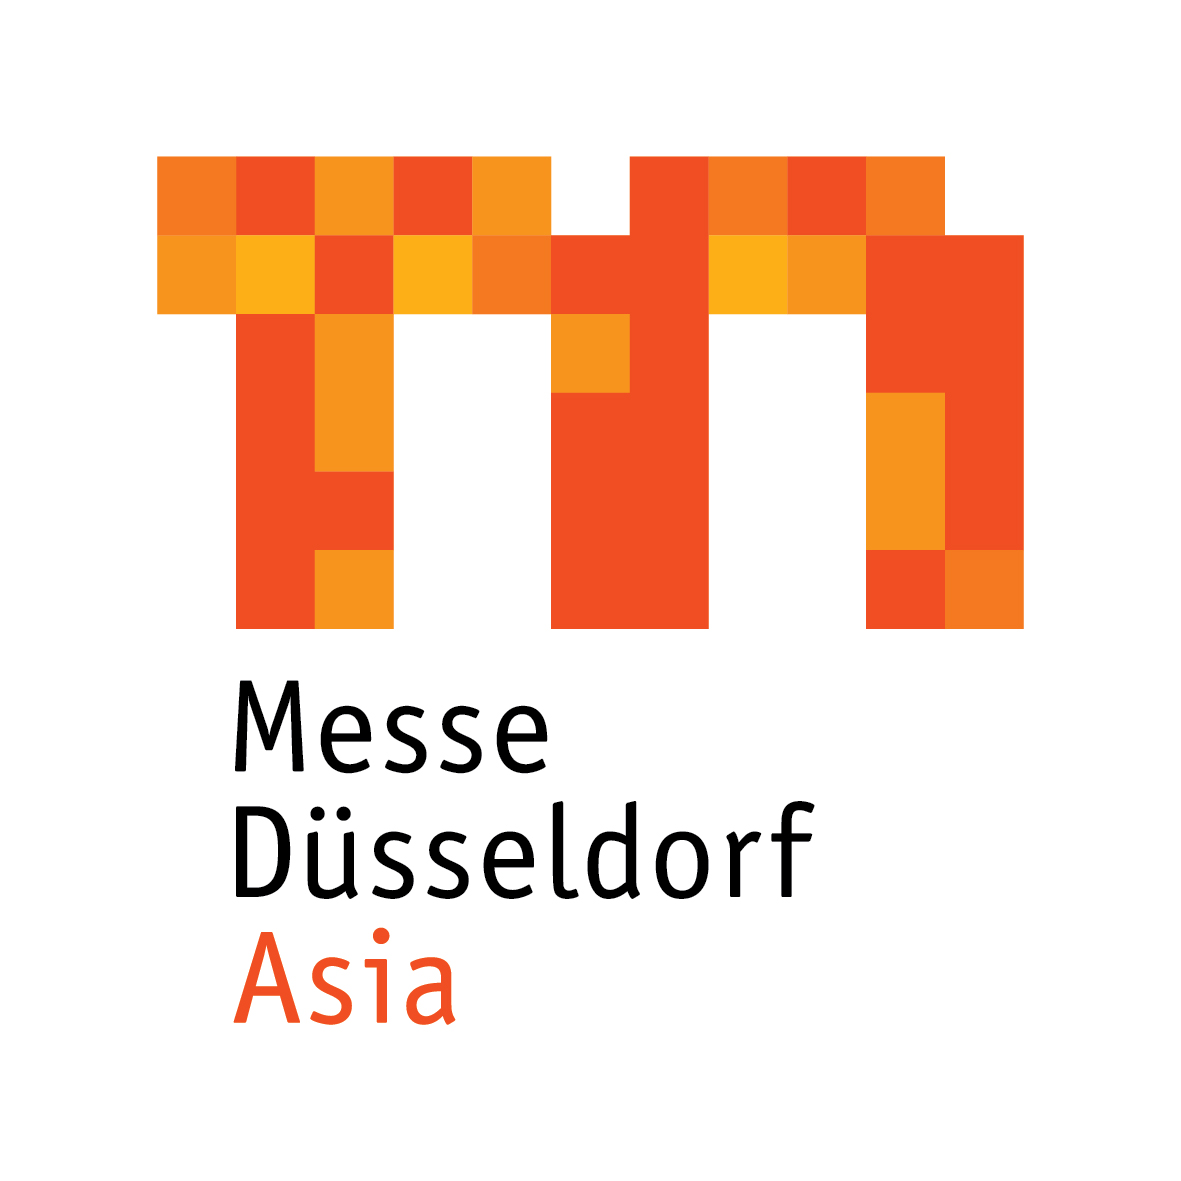 Messe Düsseldorf Asia Pte Ltd.